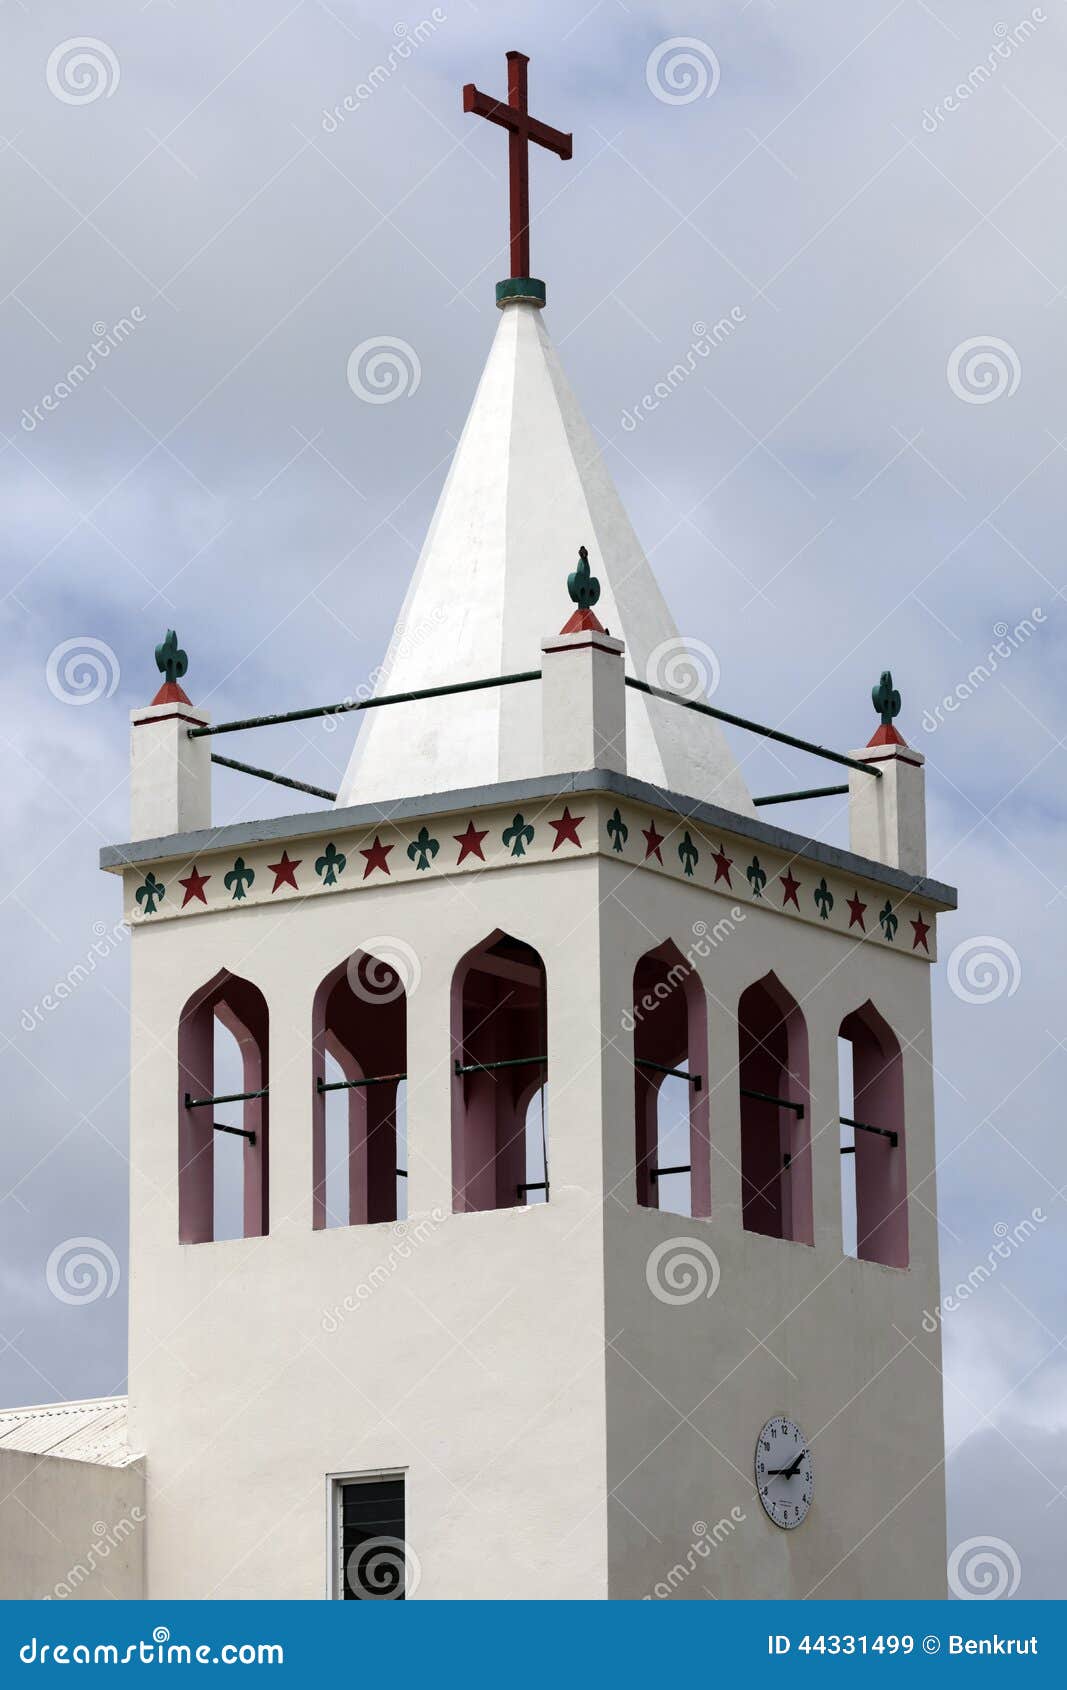 Kirchturm - Tongatapu, Tonga. Kirchturm - Tongatapu-Insel, Tonga